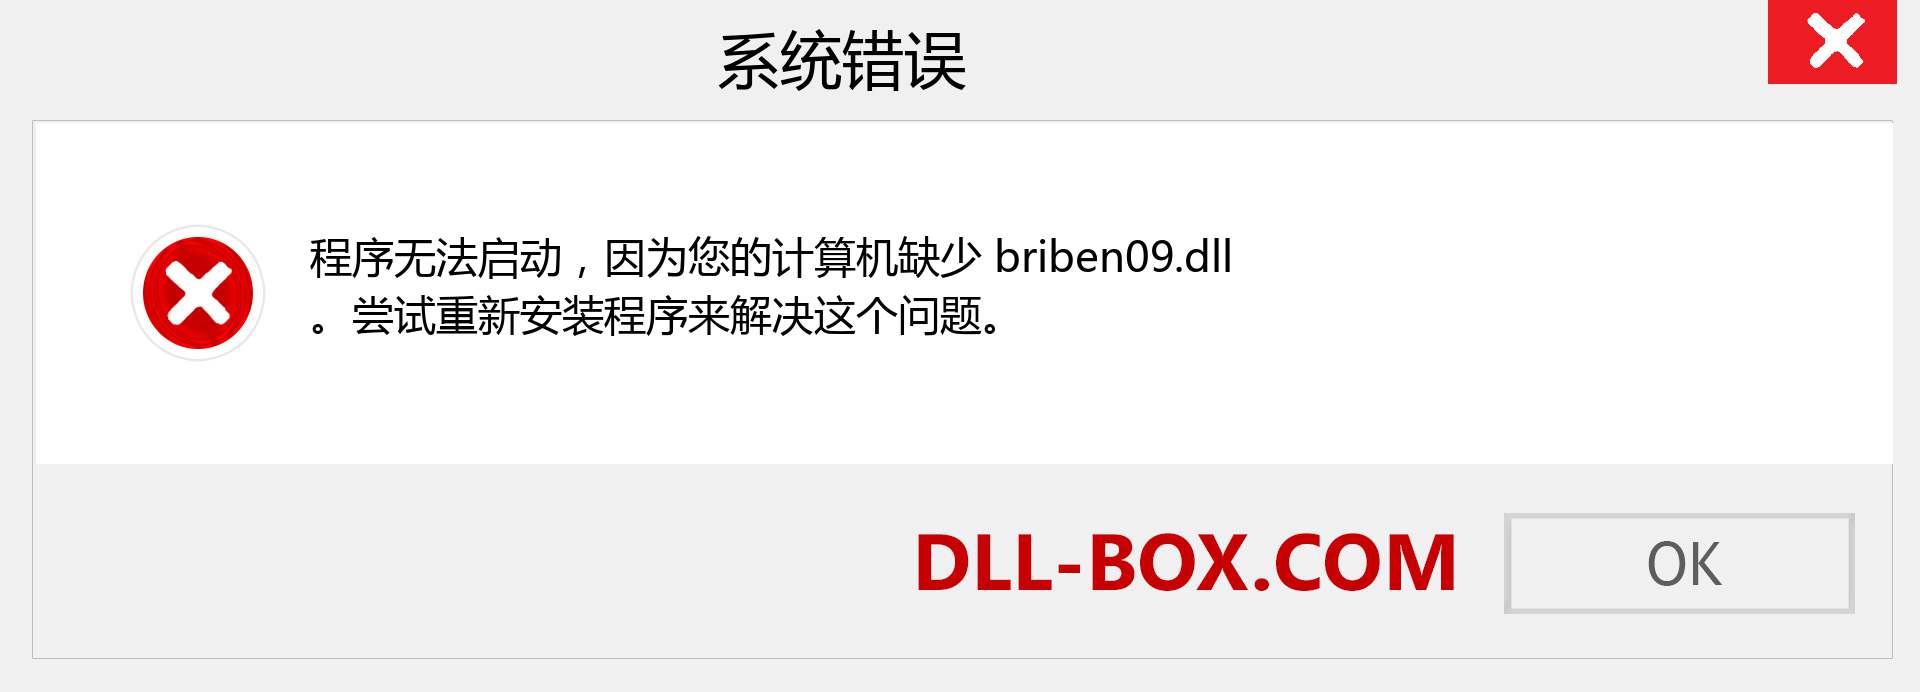 briben09.dll 文件丢失？。 适用于 Windows 7、8、10 的下载 - 修复 Windows、照片、图像上的 briben09 dll 丢失错误